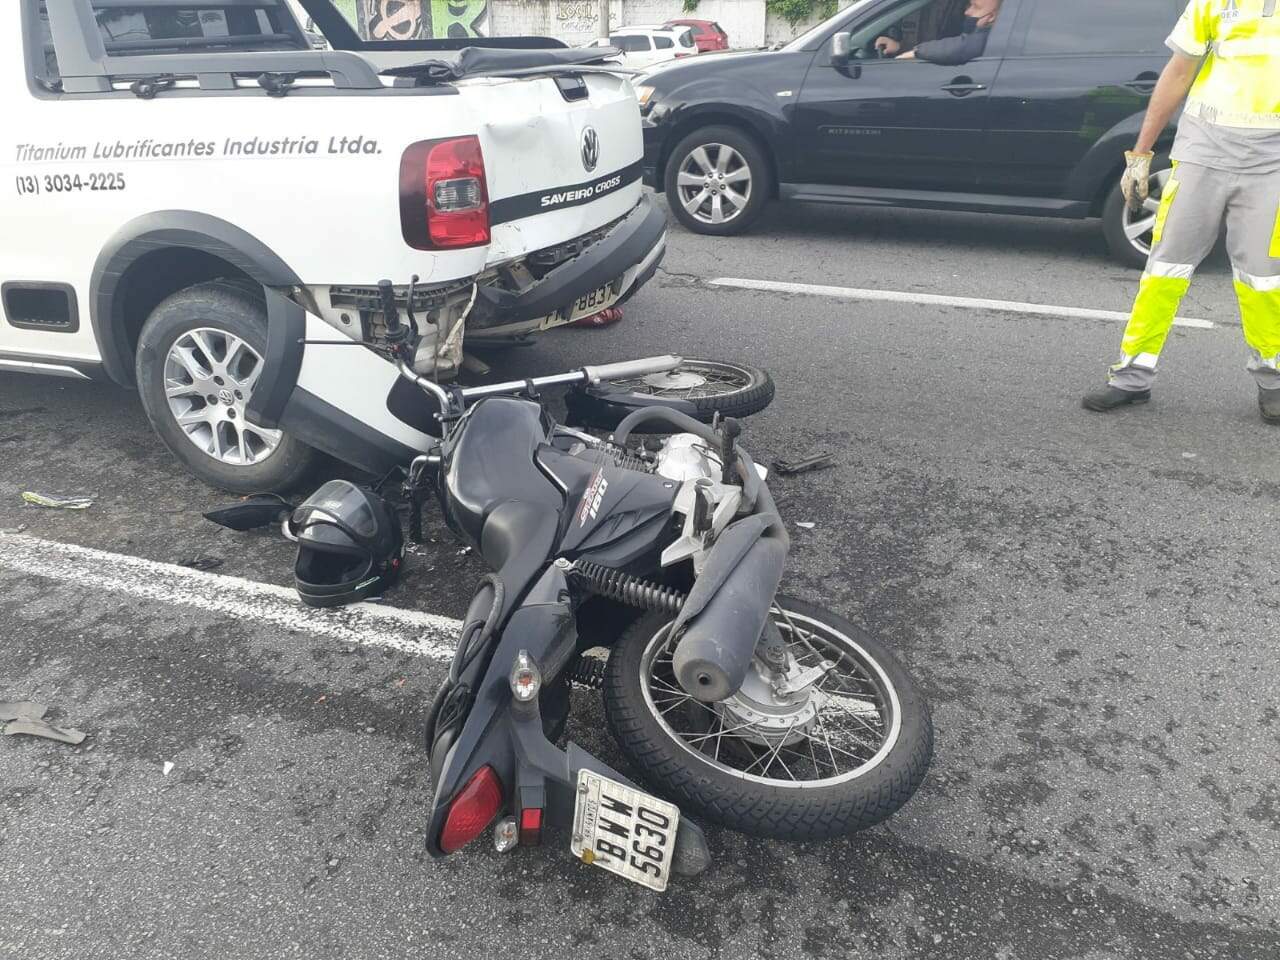 Condutor e passageiros da motocicleta foram encaminhados ao Hospital Irmã Dulce